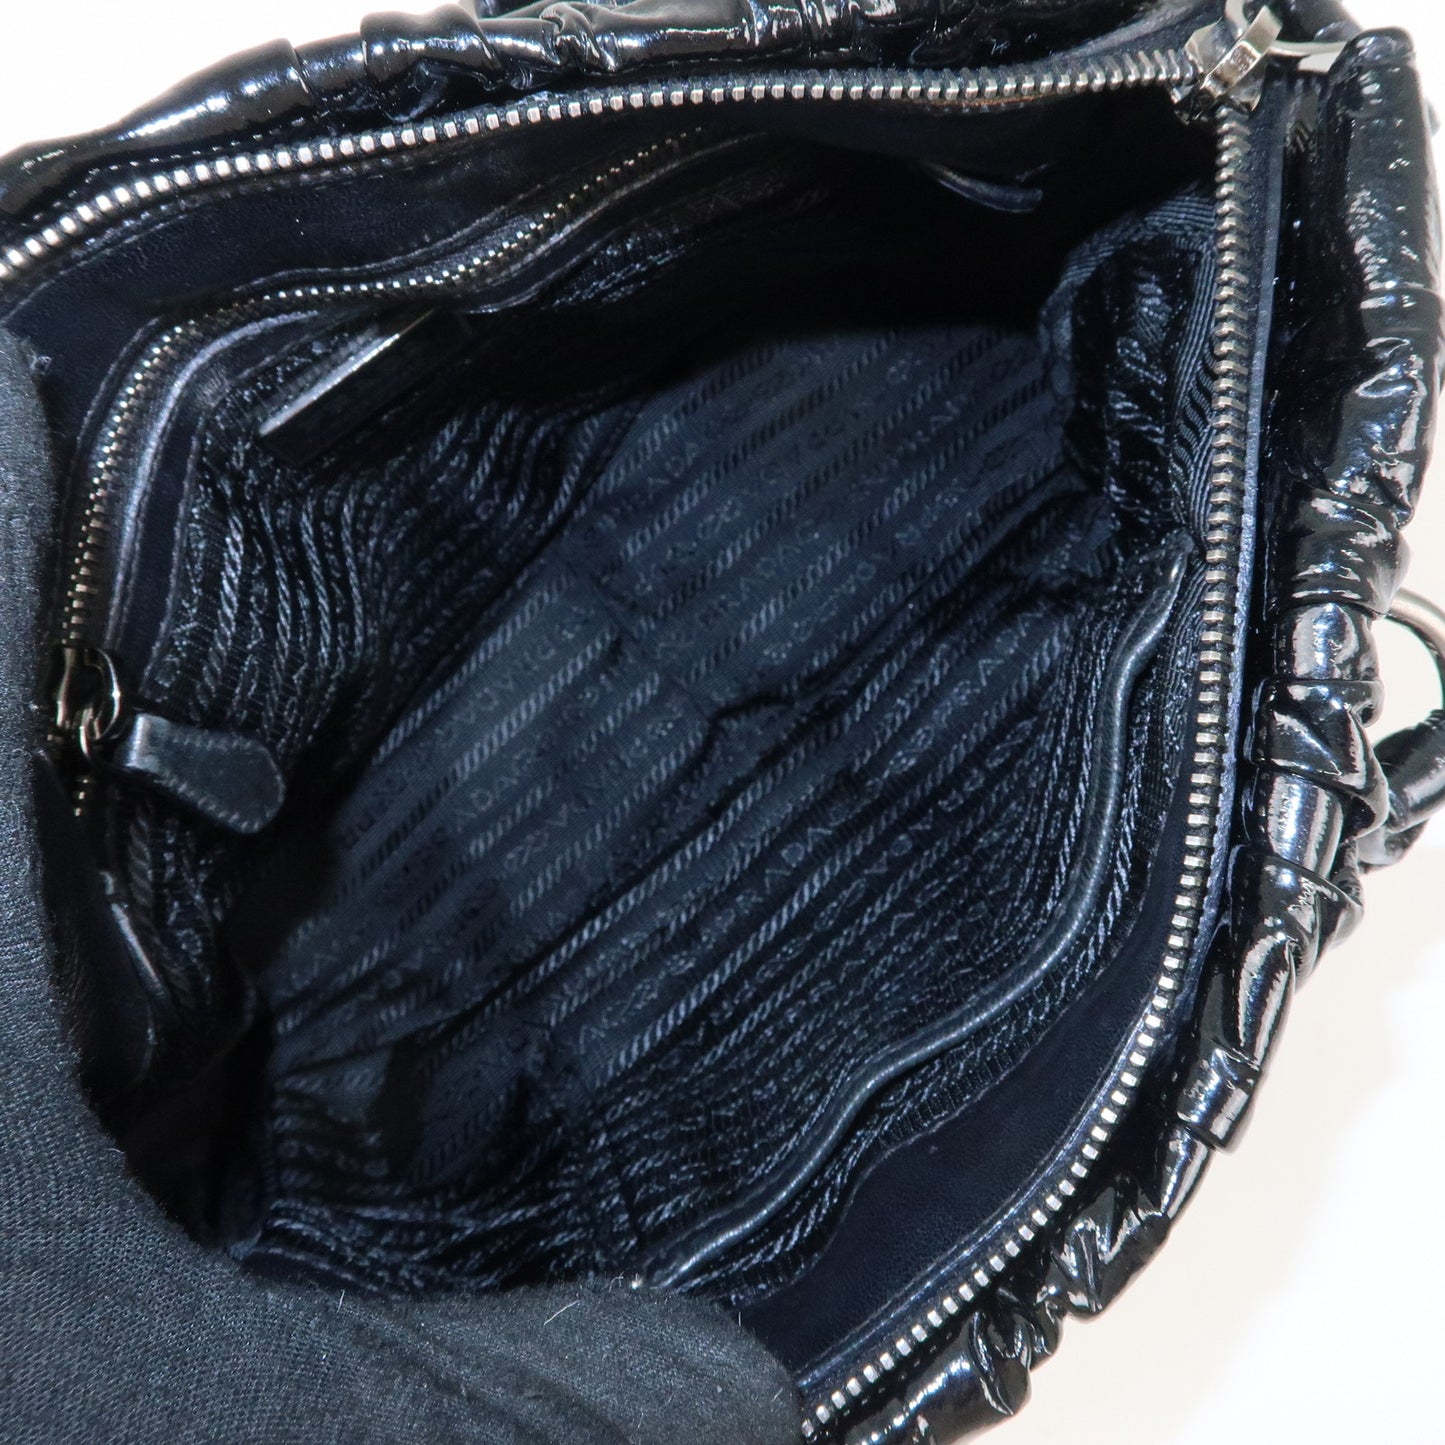 PRADA Logo Enamel Leather 2Way Shoulder Bag Hand Bag Black